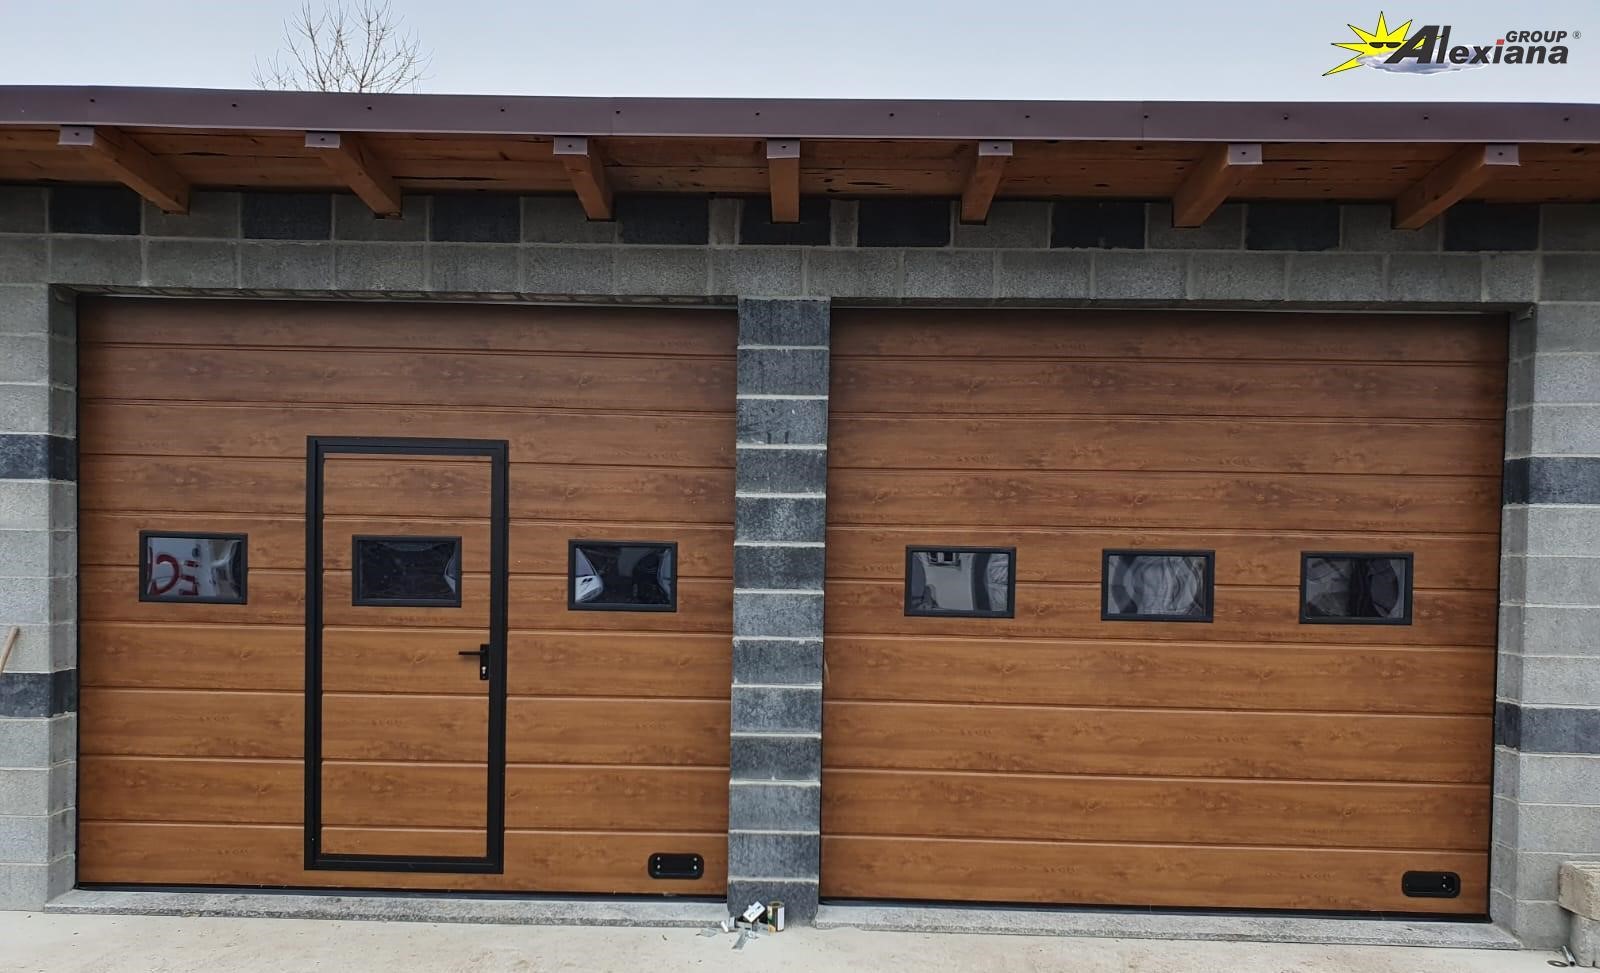 Te interesează oferte uși de garaj pentru a obține izolare termică și fonică? Descoperă aici detalii